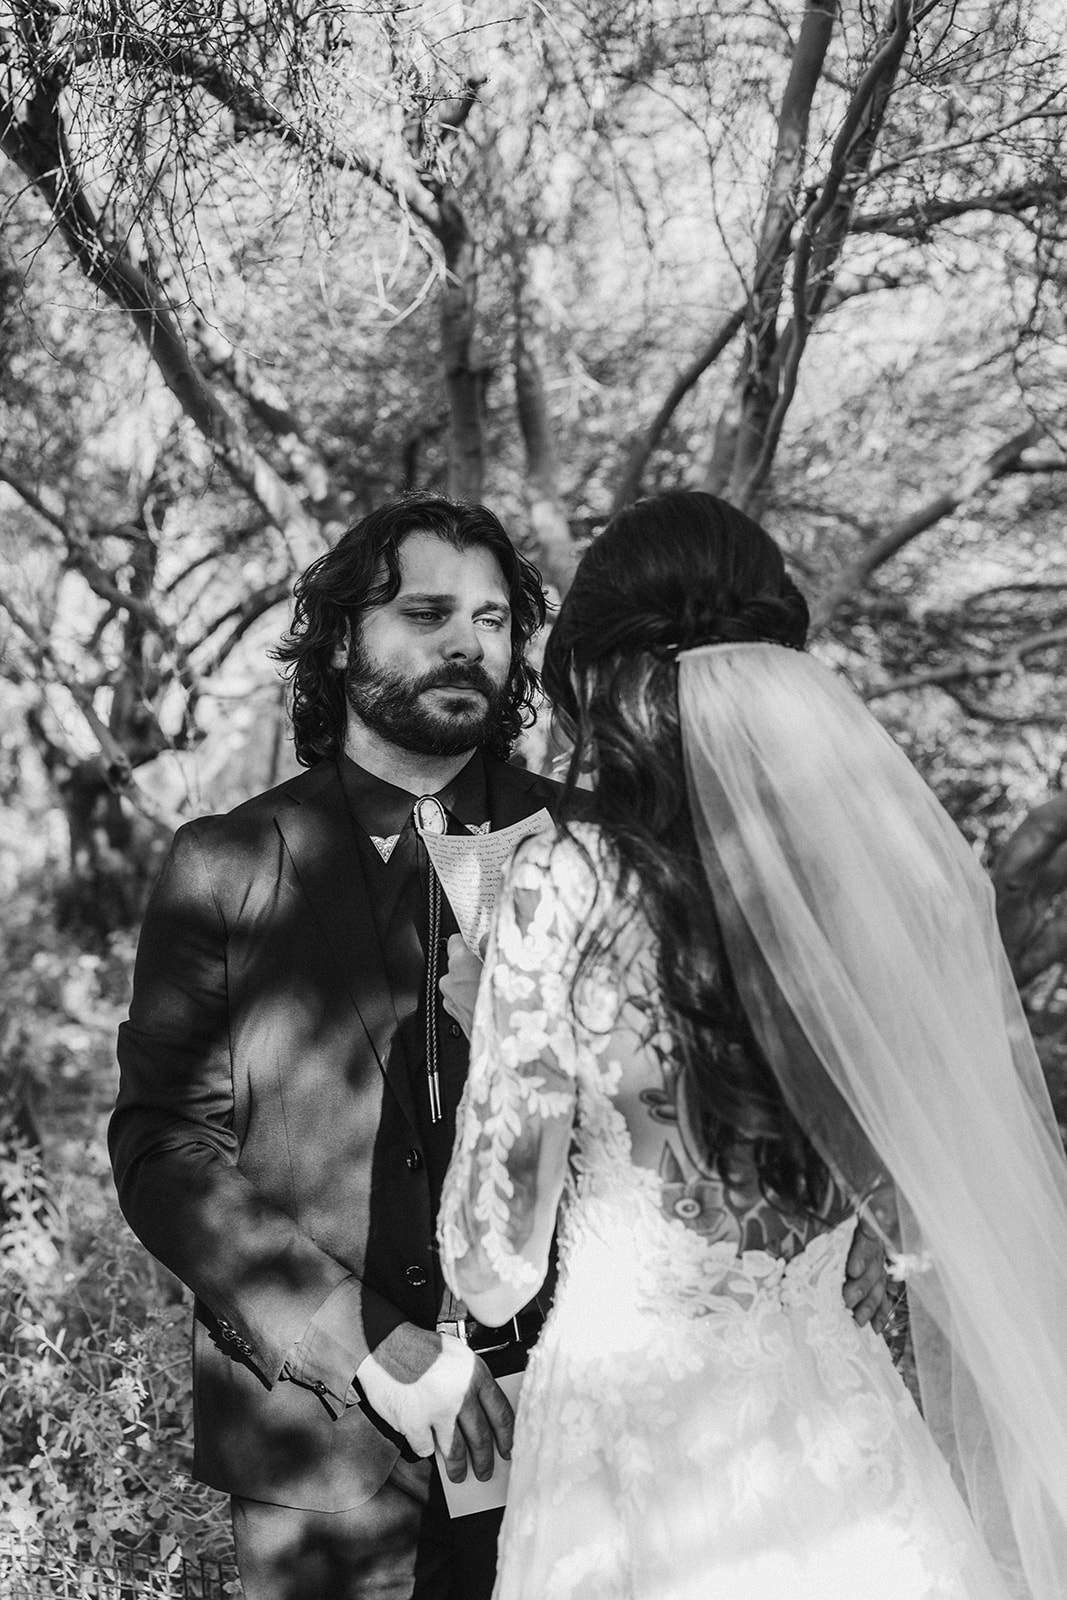 first look desert intimate wedding vows phoenix arizona destination brianna kirk photography 